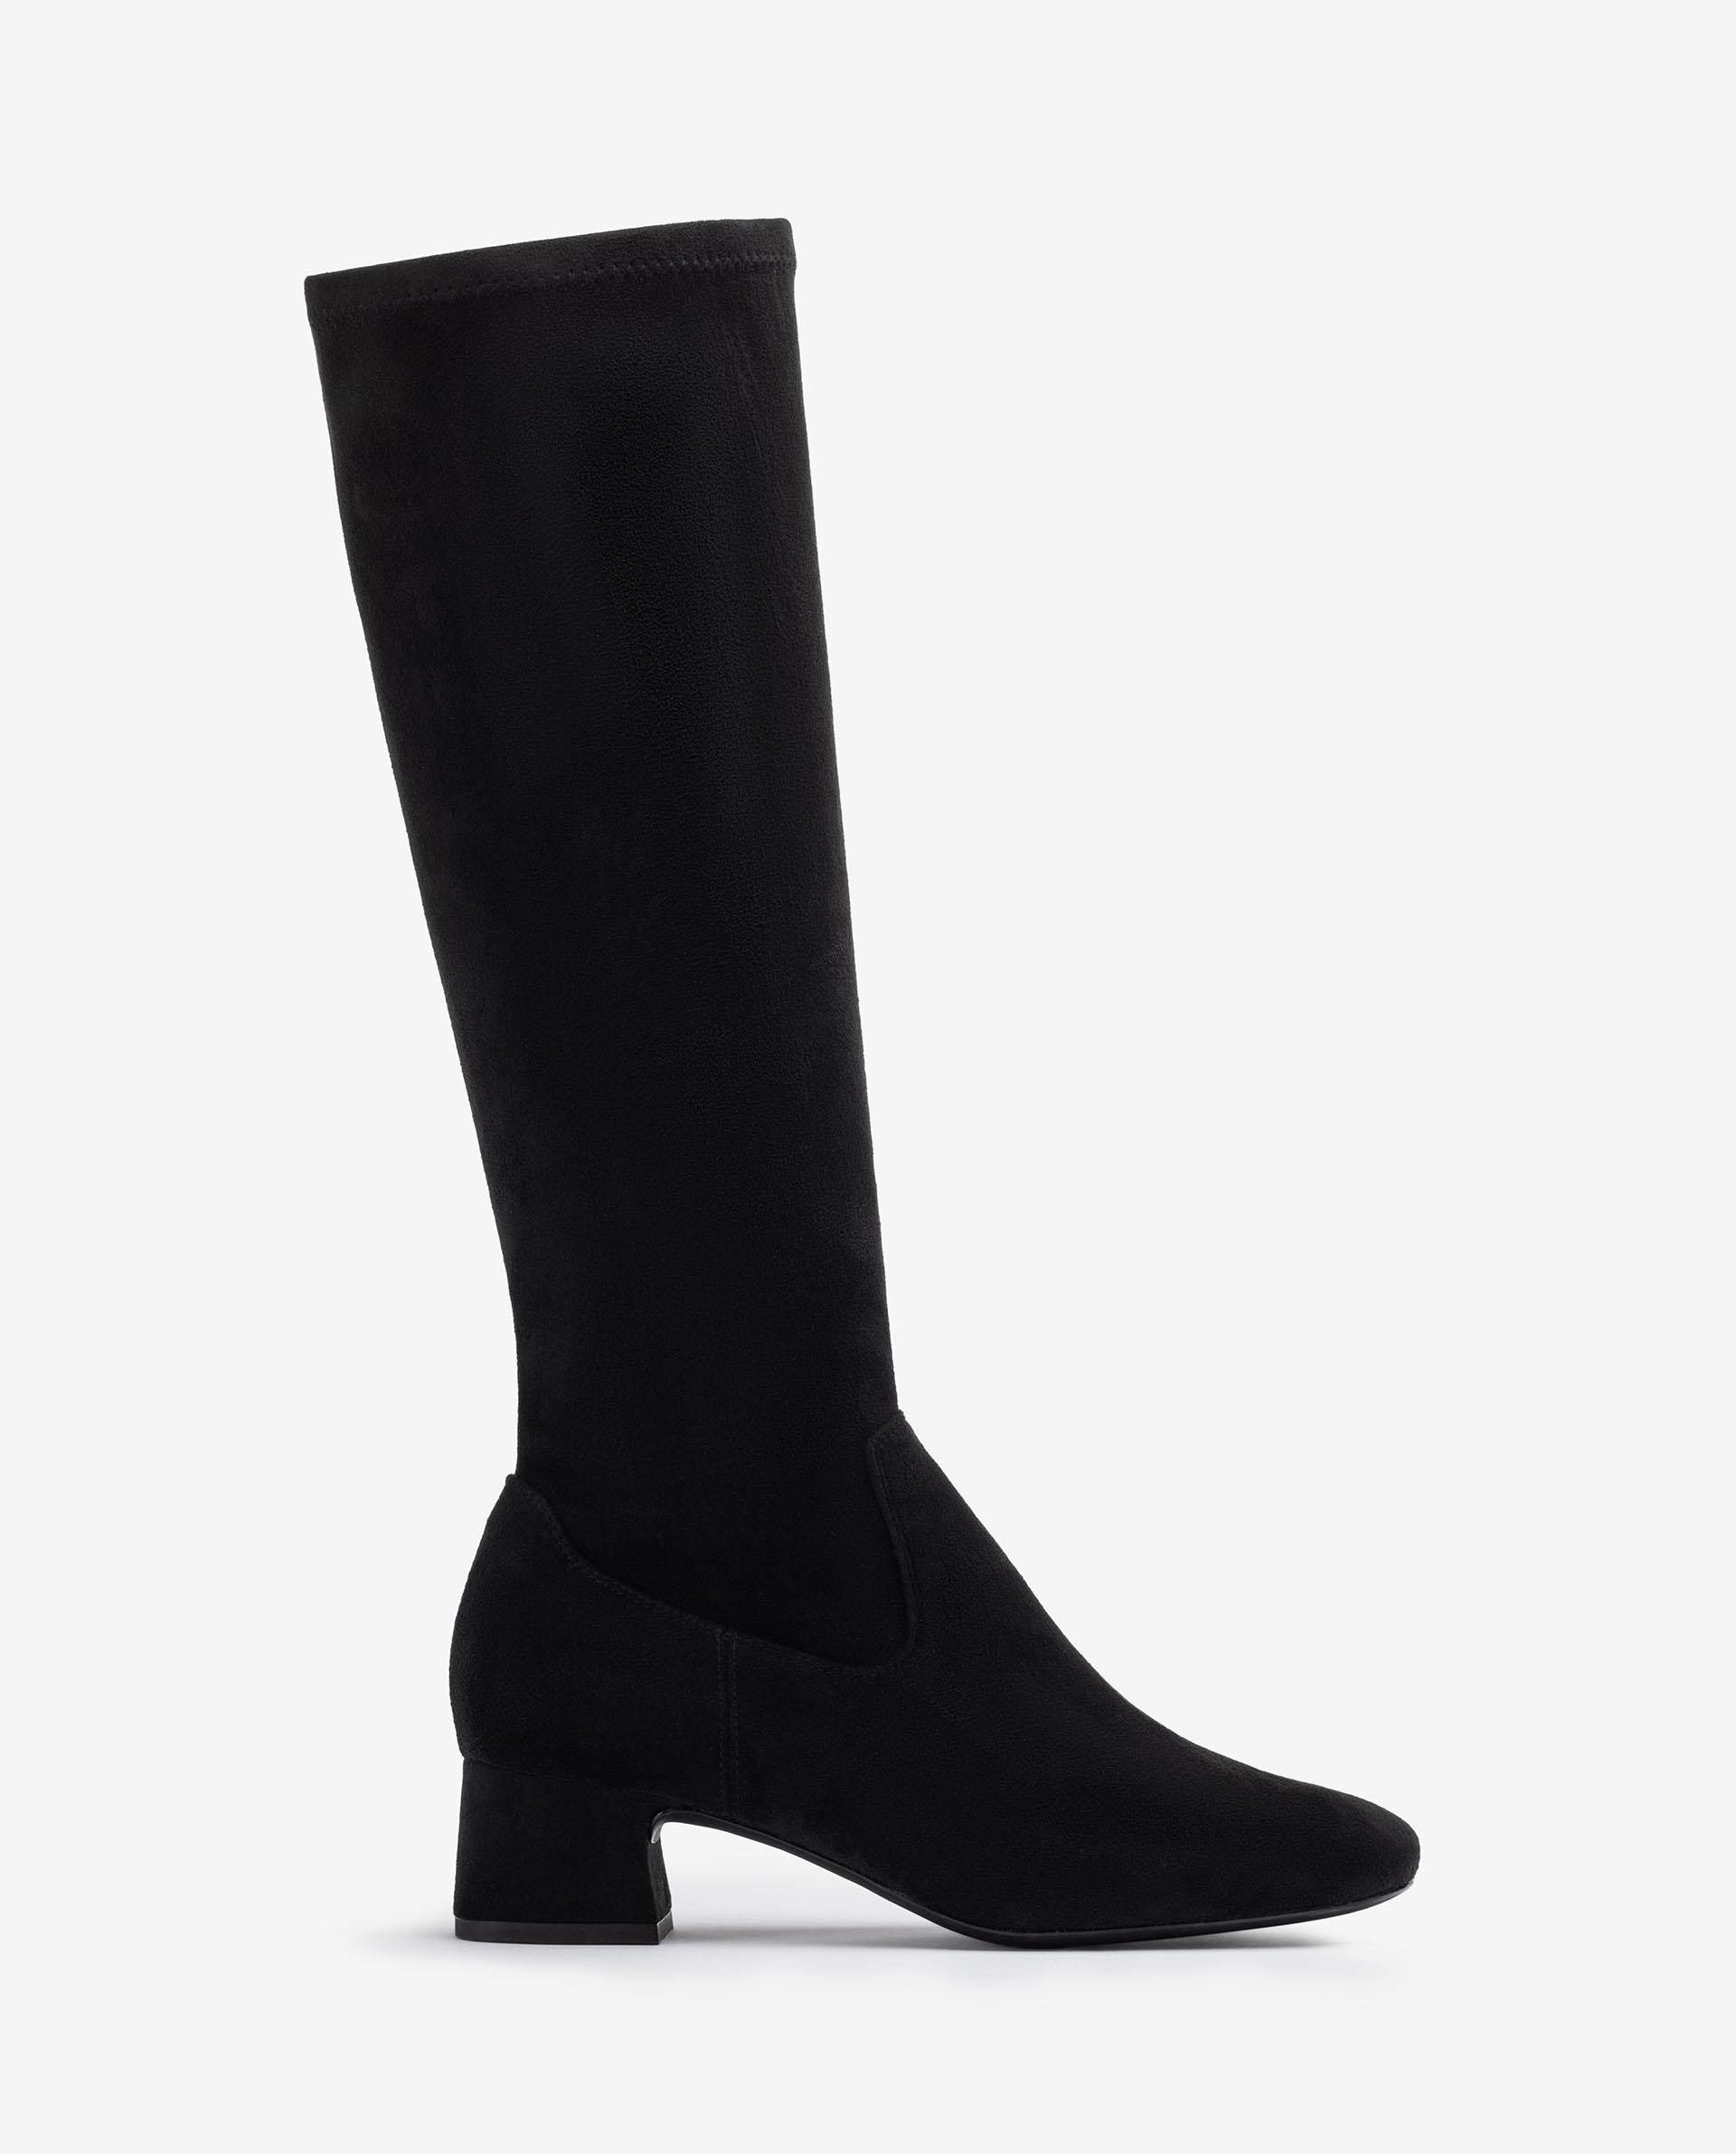 Mujer Zapatos de Botas de Botas de caña alta Bota de punta cuadrada de Unisa de color Negro 